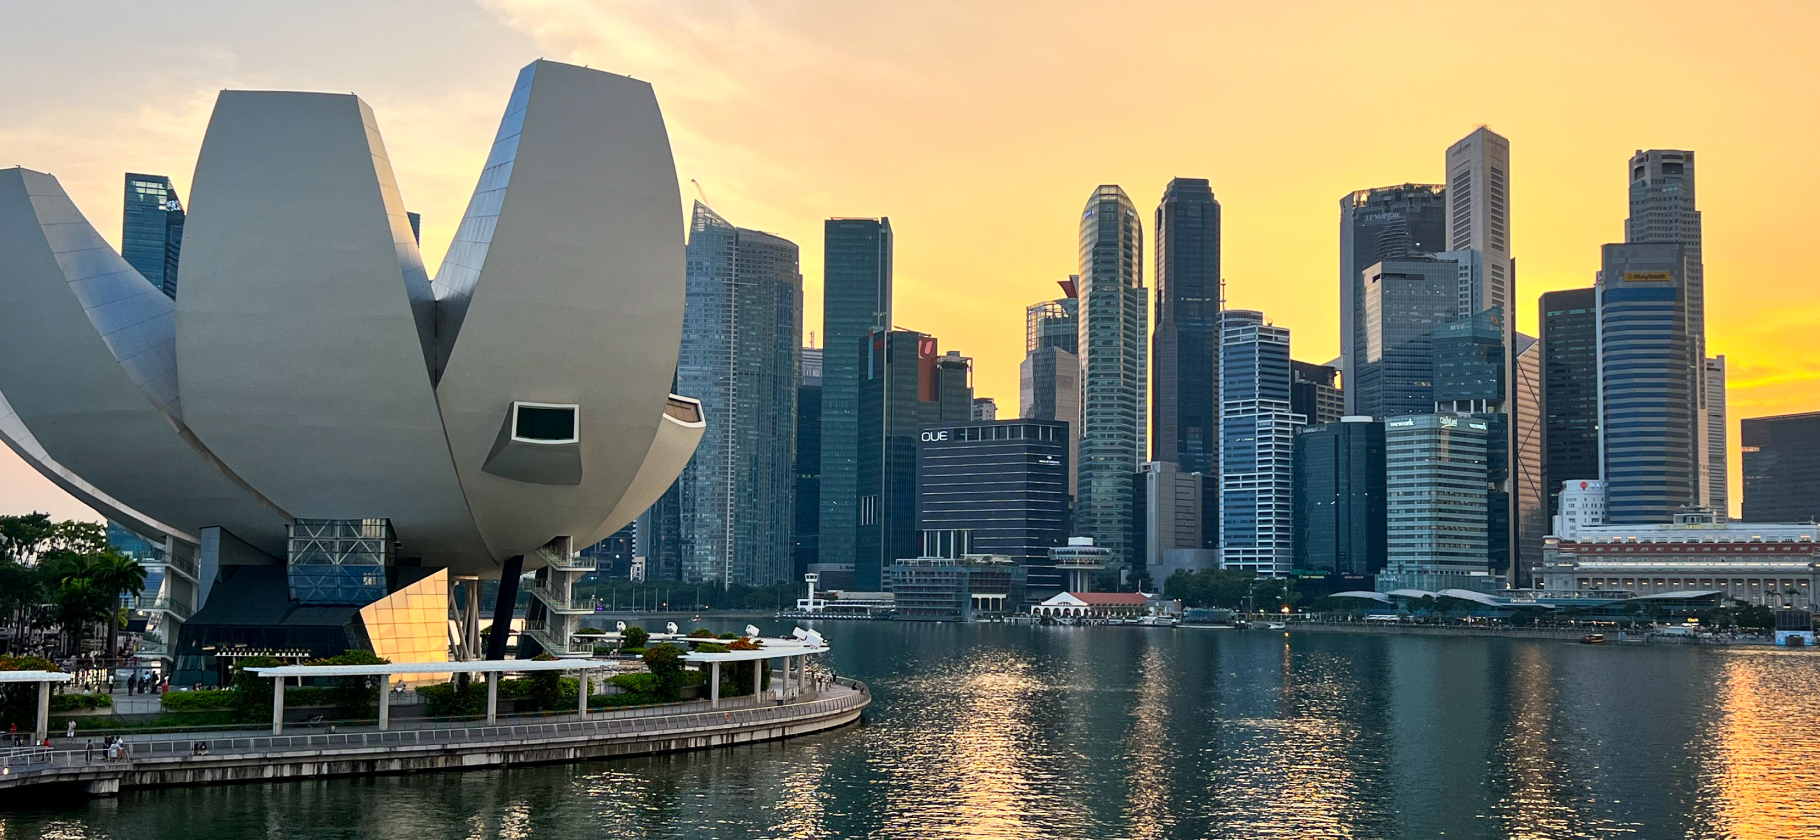 Фотоальбом: как я посмотрела Сингапур за 3 дня